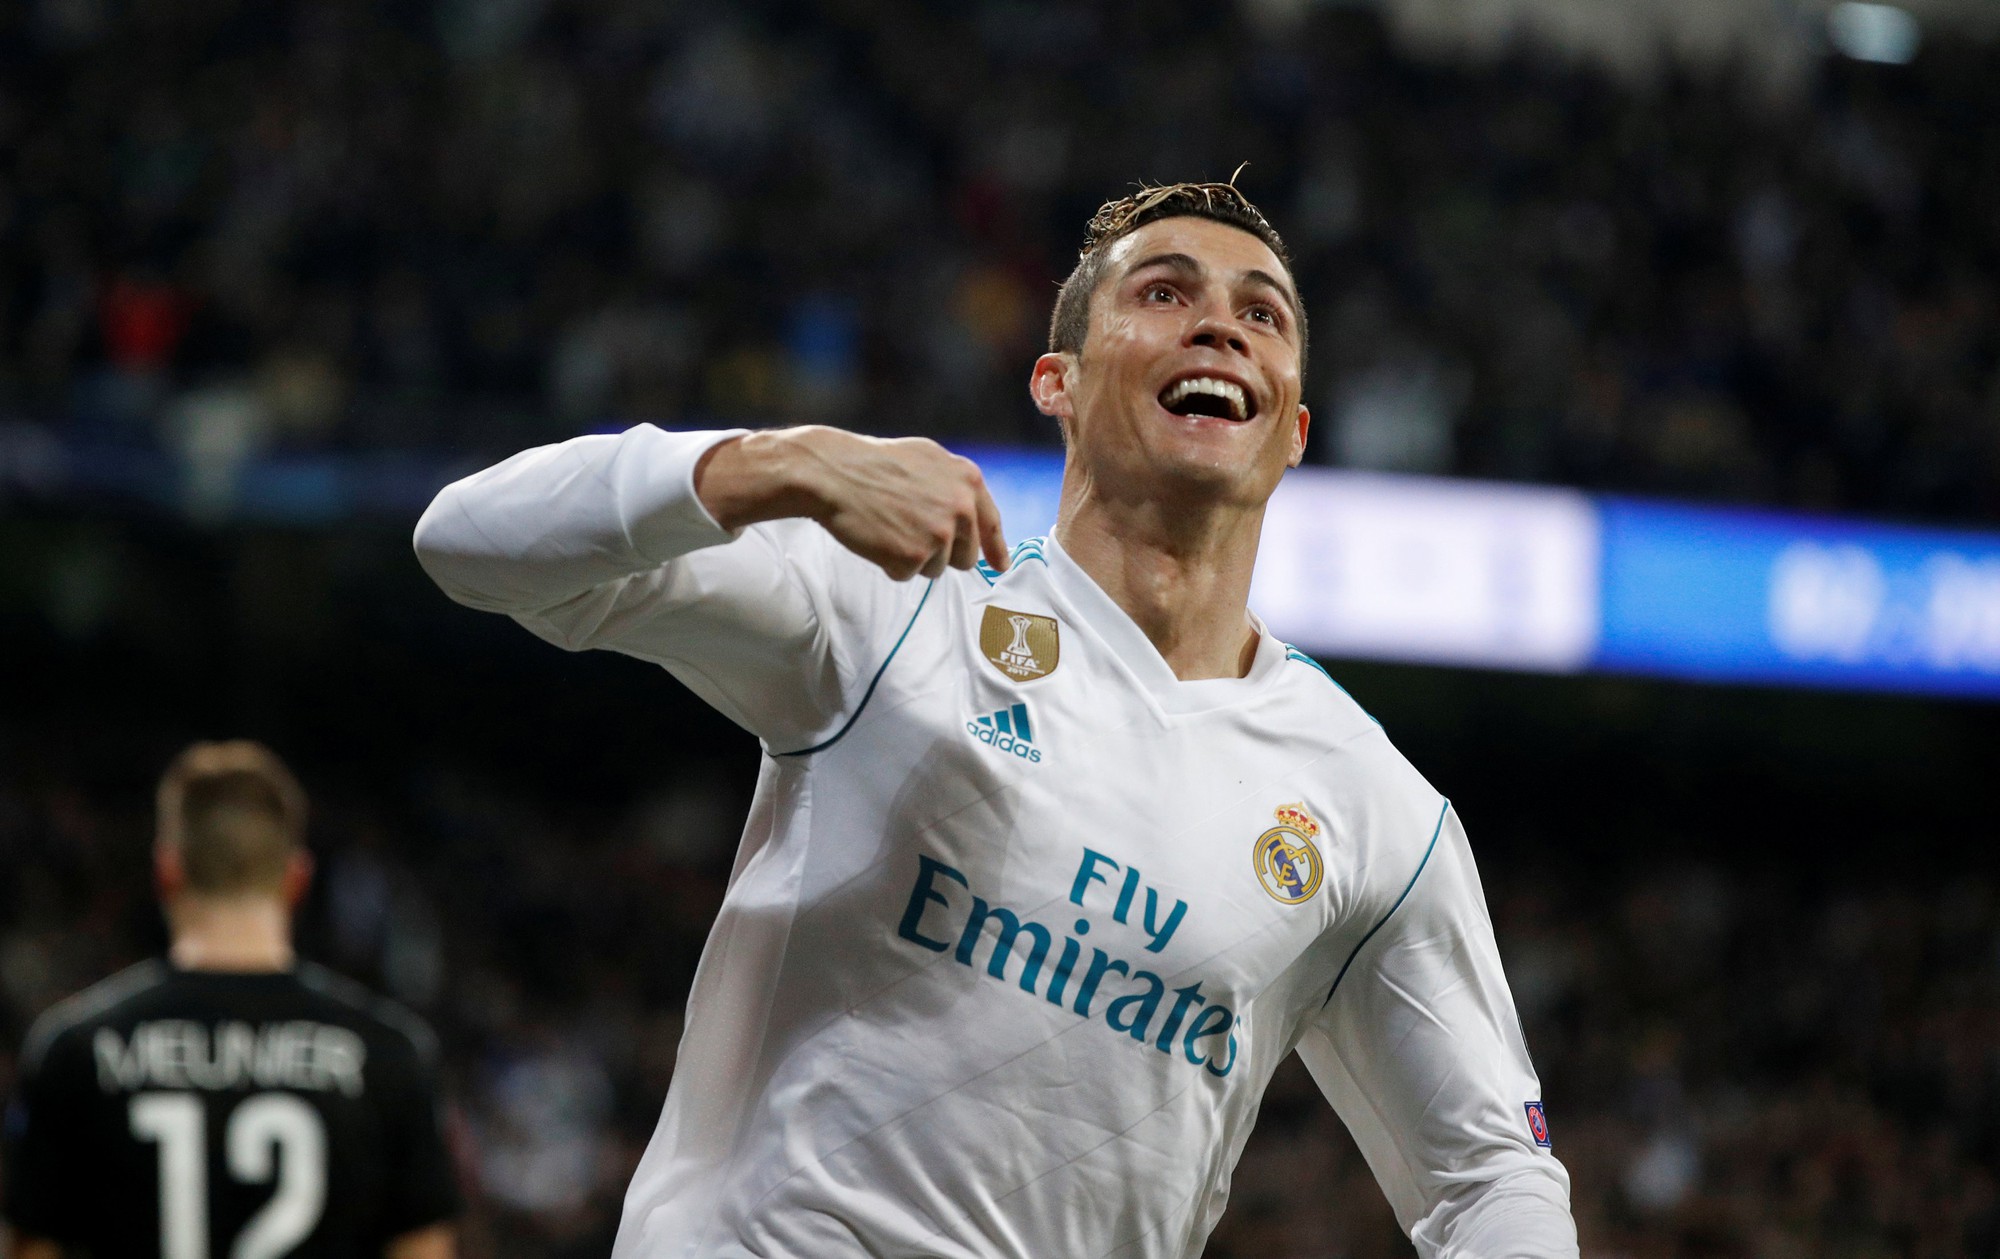 Ronaldo, PSG: Thưởng thức hình ảnh Ronaldo trong đội bóng mới PSG - một trong những CLB hàng đầu châu Âu, làm chao đảo trái tim của các fan hâm mộ bóng đá trên toàn cầu.